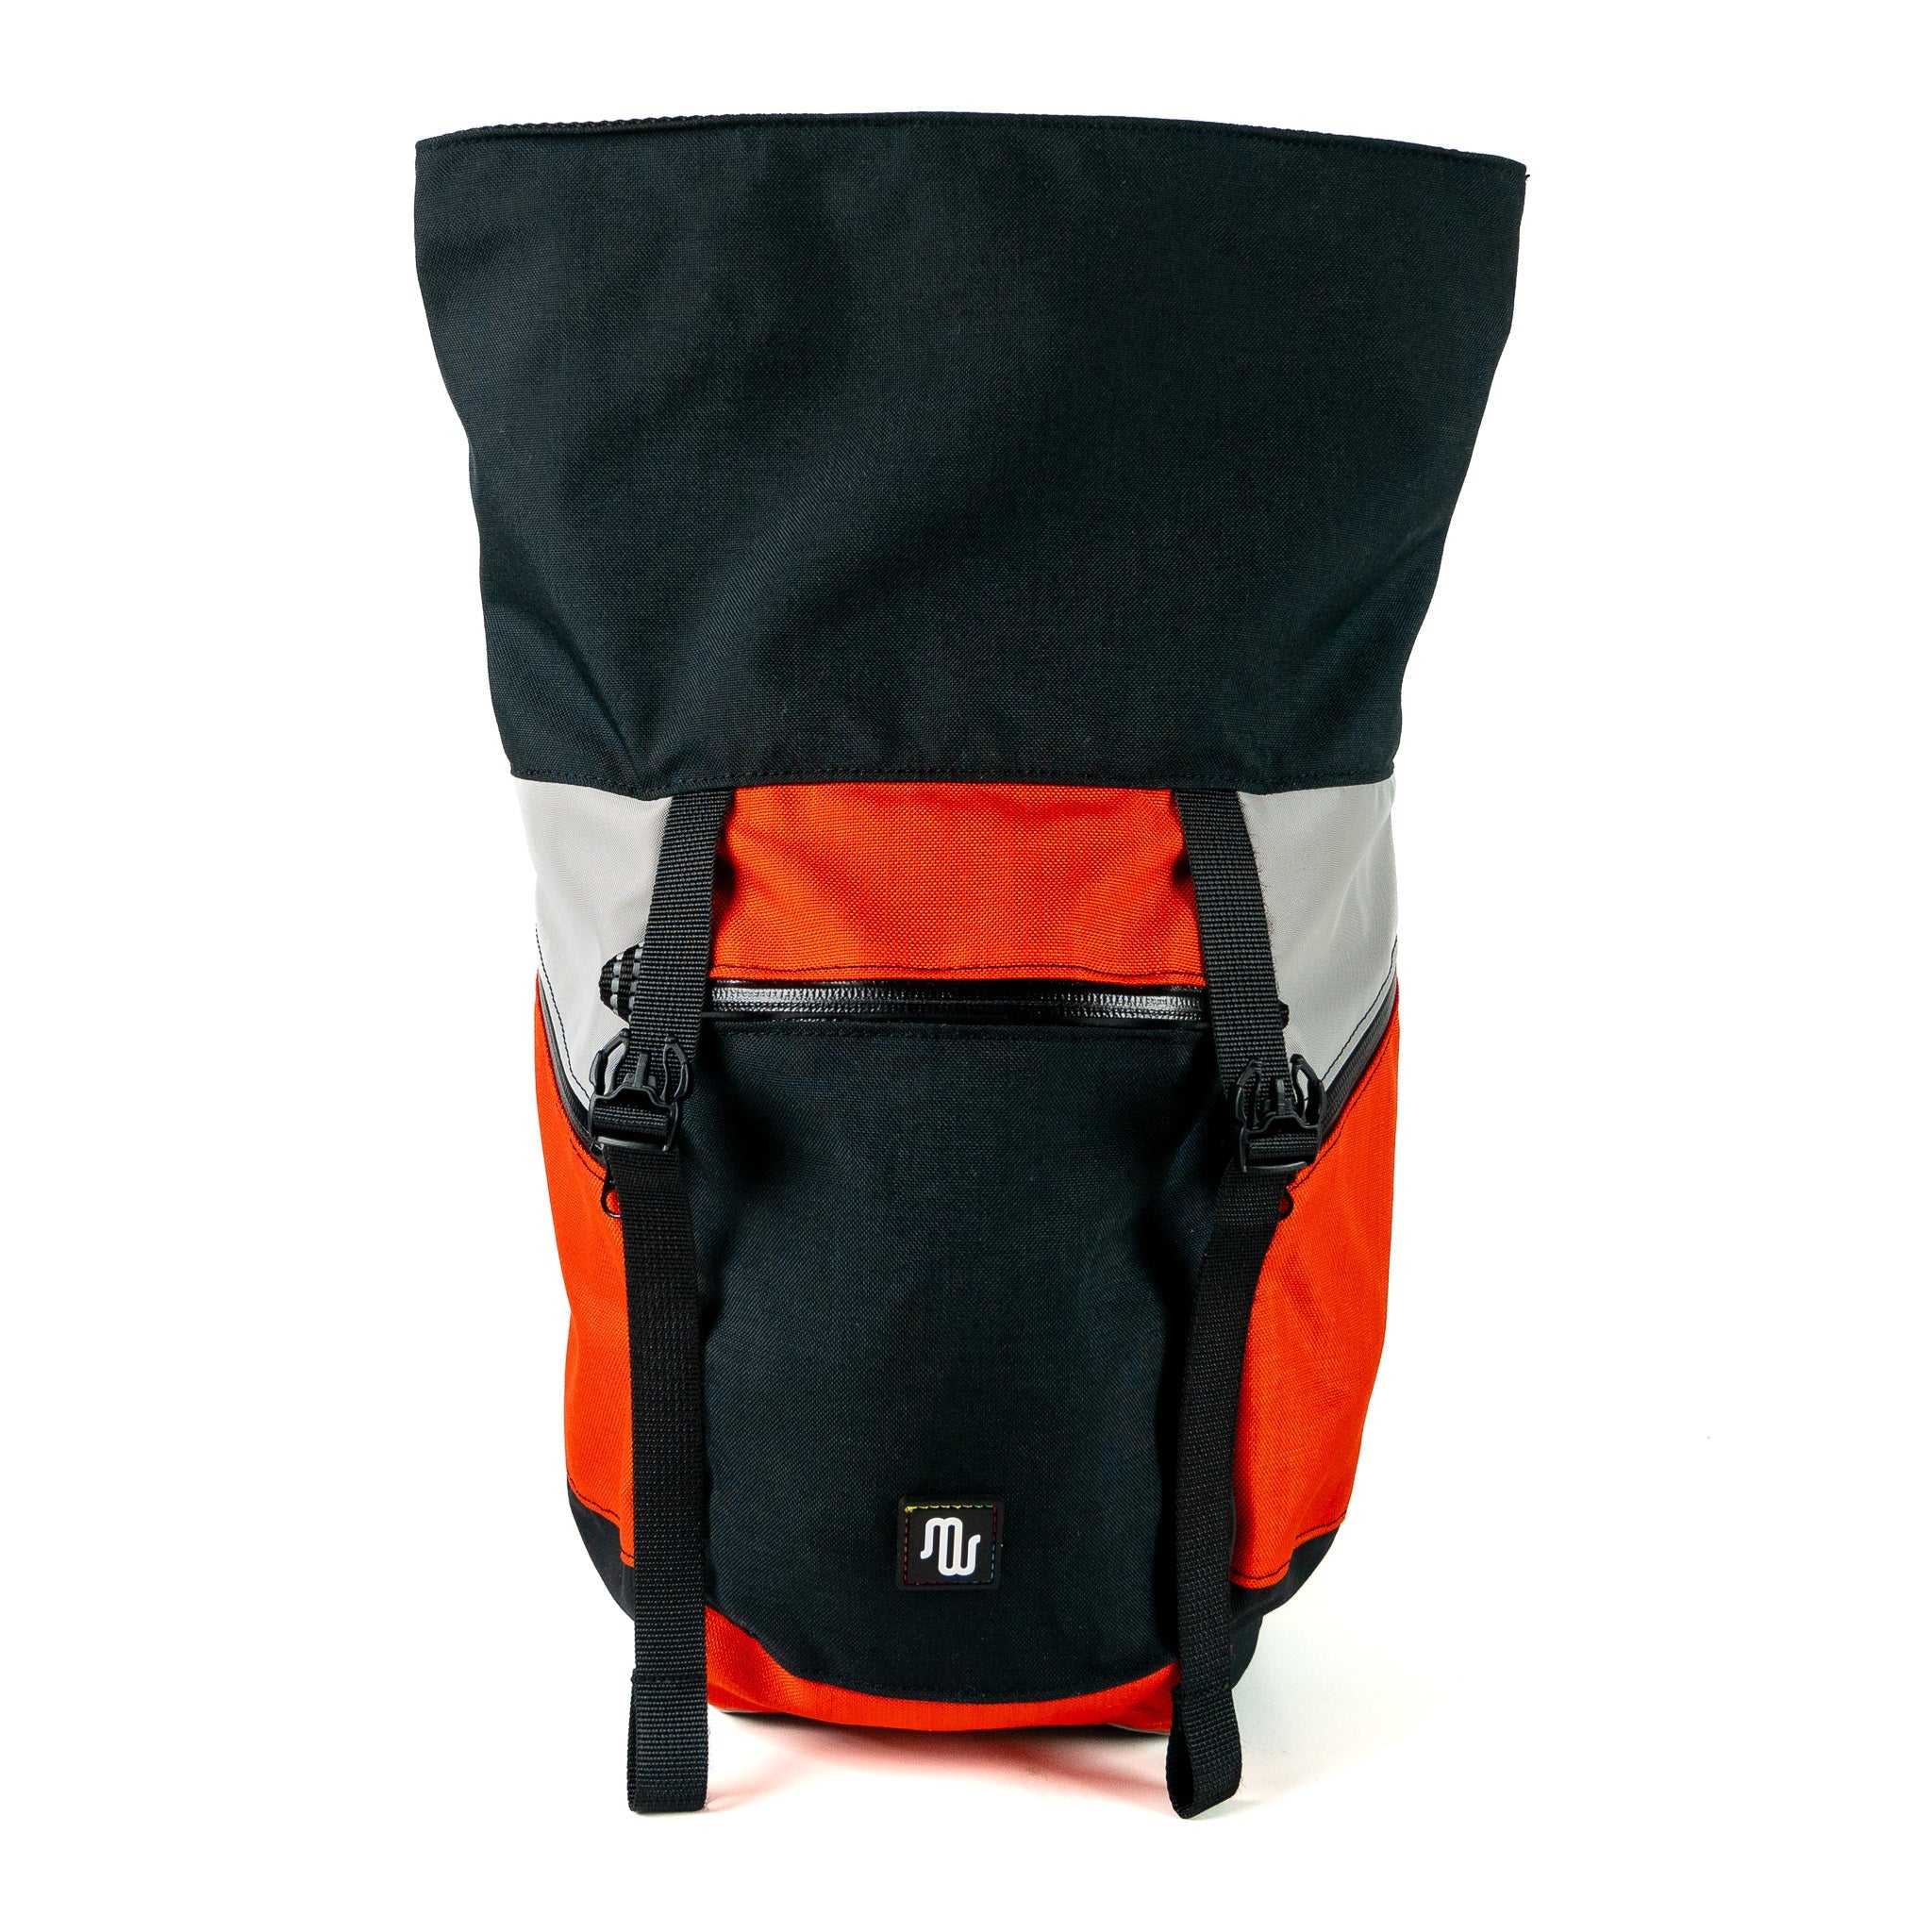 Backpack - BUDDY No. 157 - Backpack - medencebag